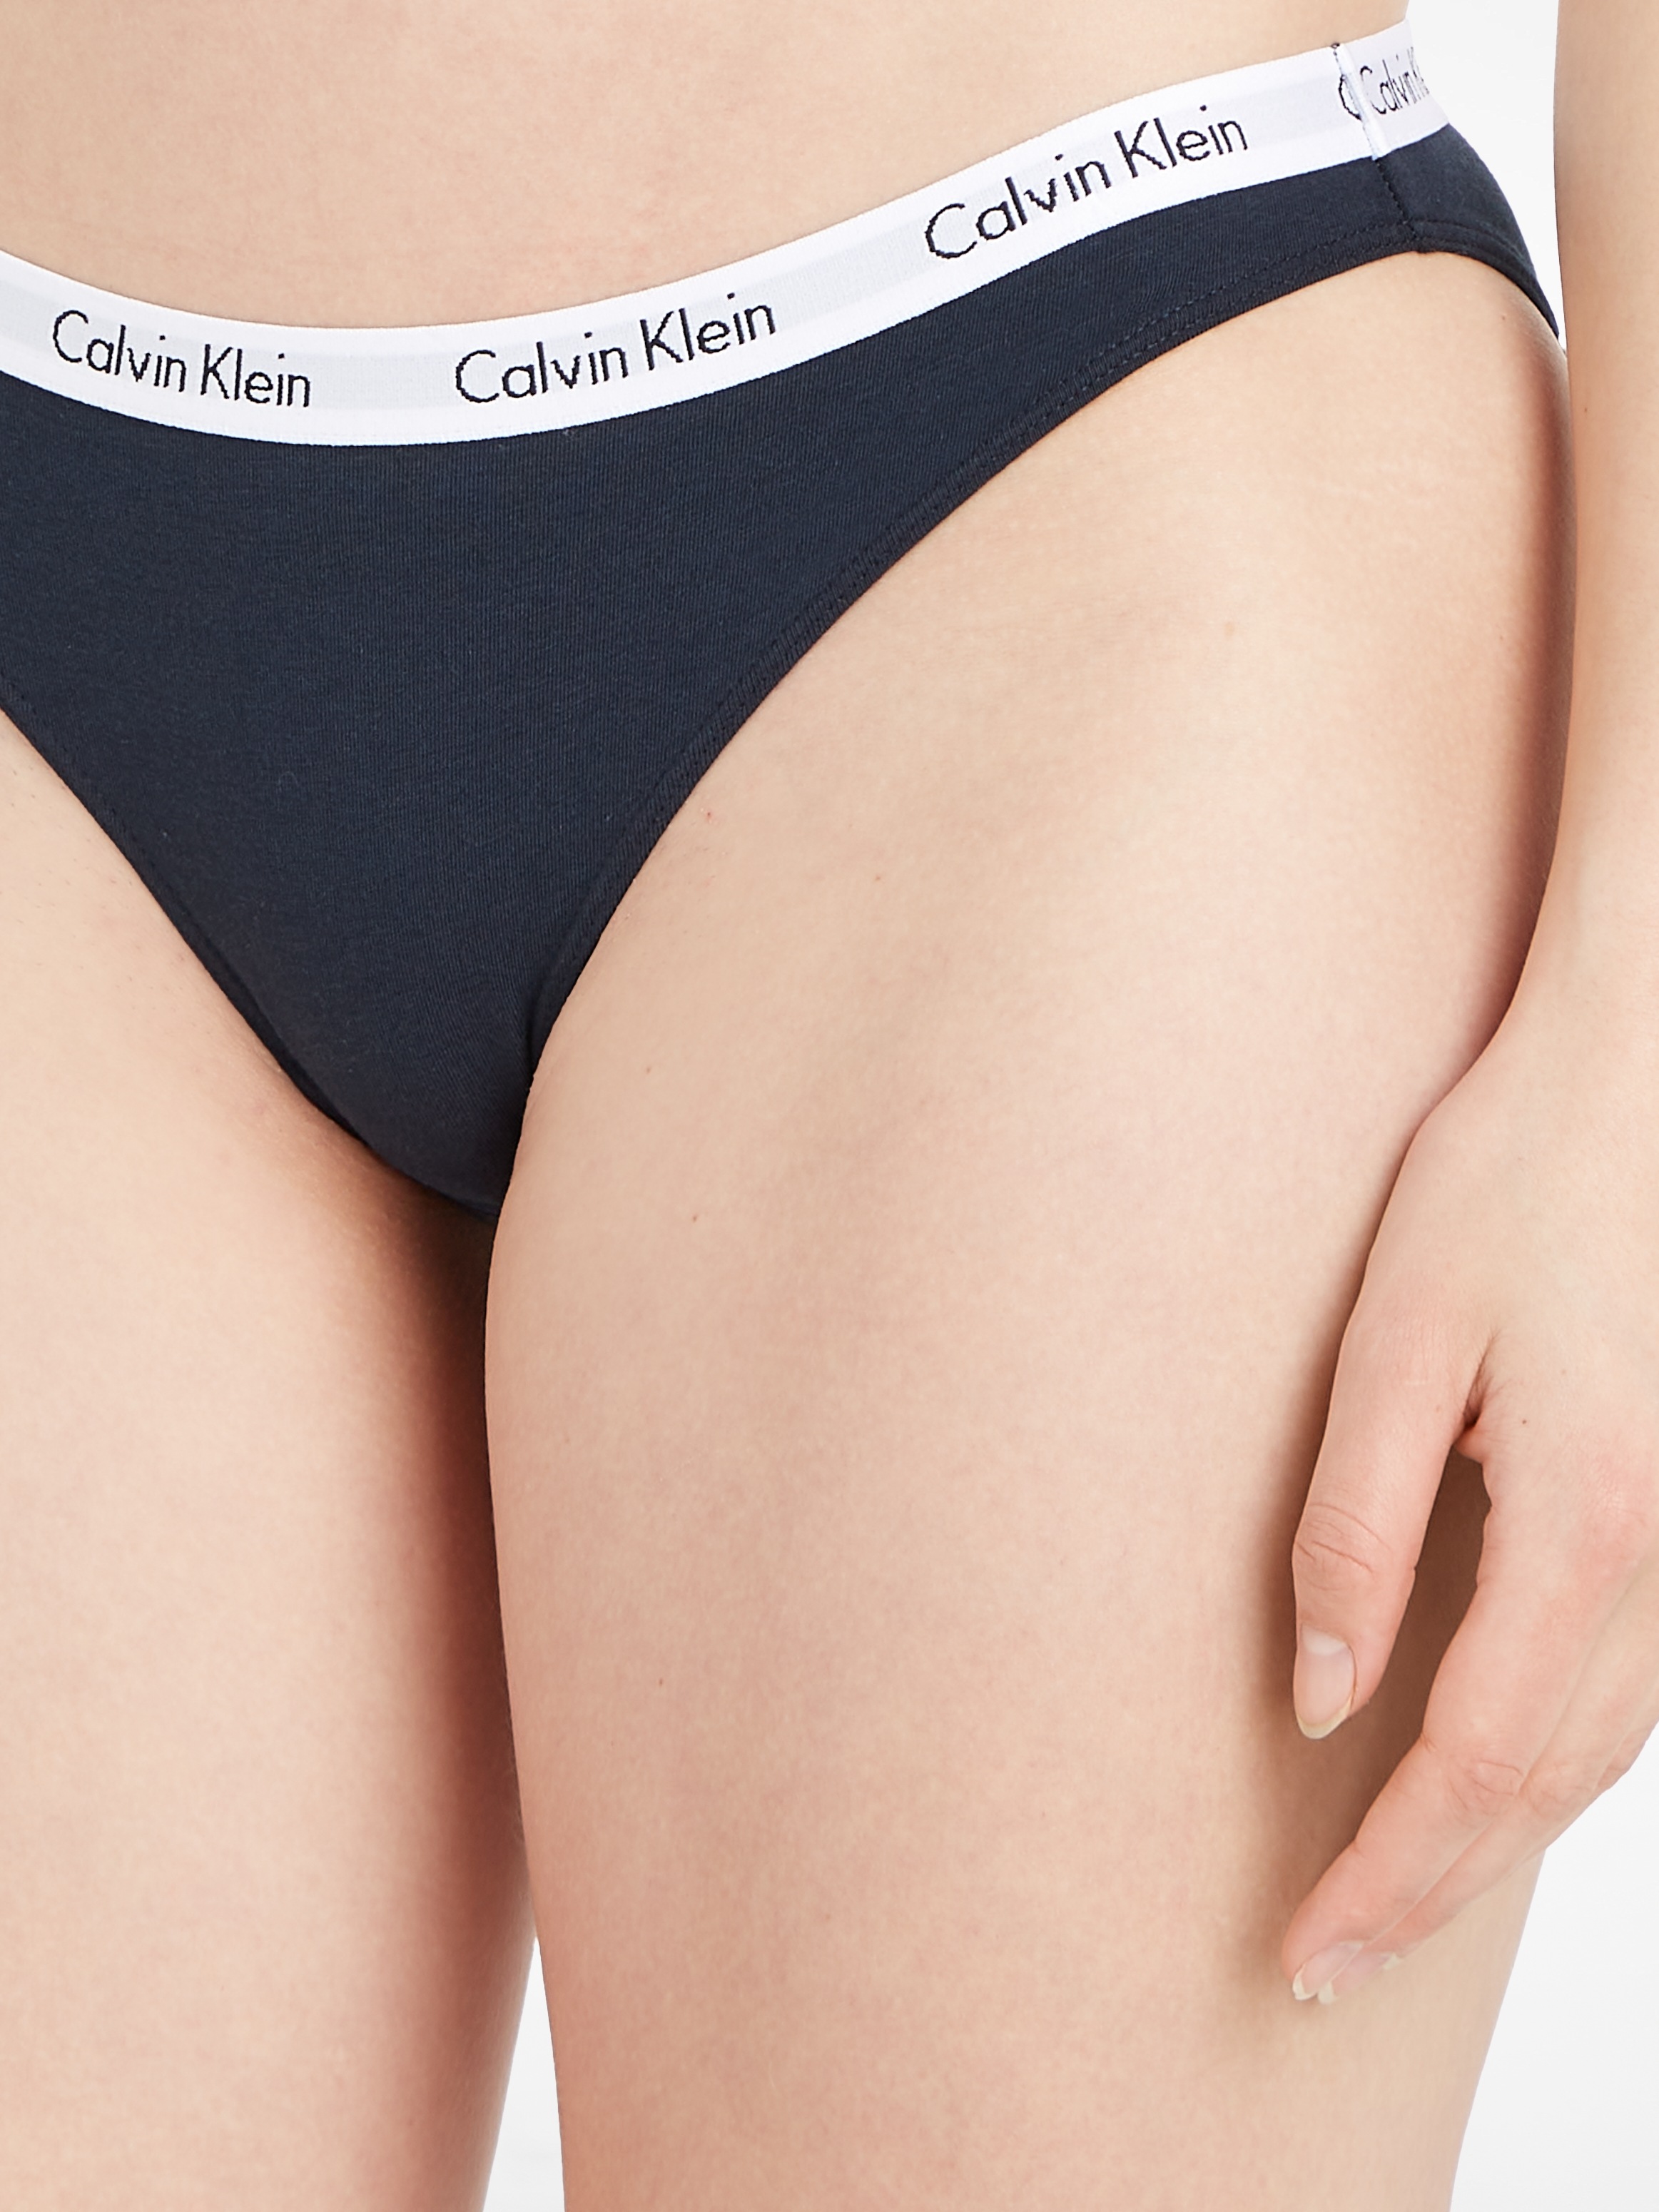 Calvin Klein Bikinislip, OTTO bestellen bei Logobund mit